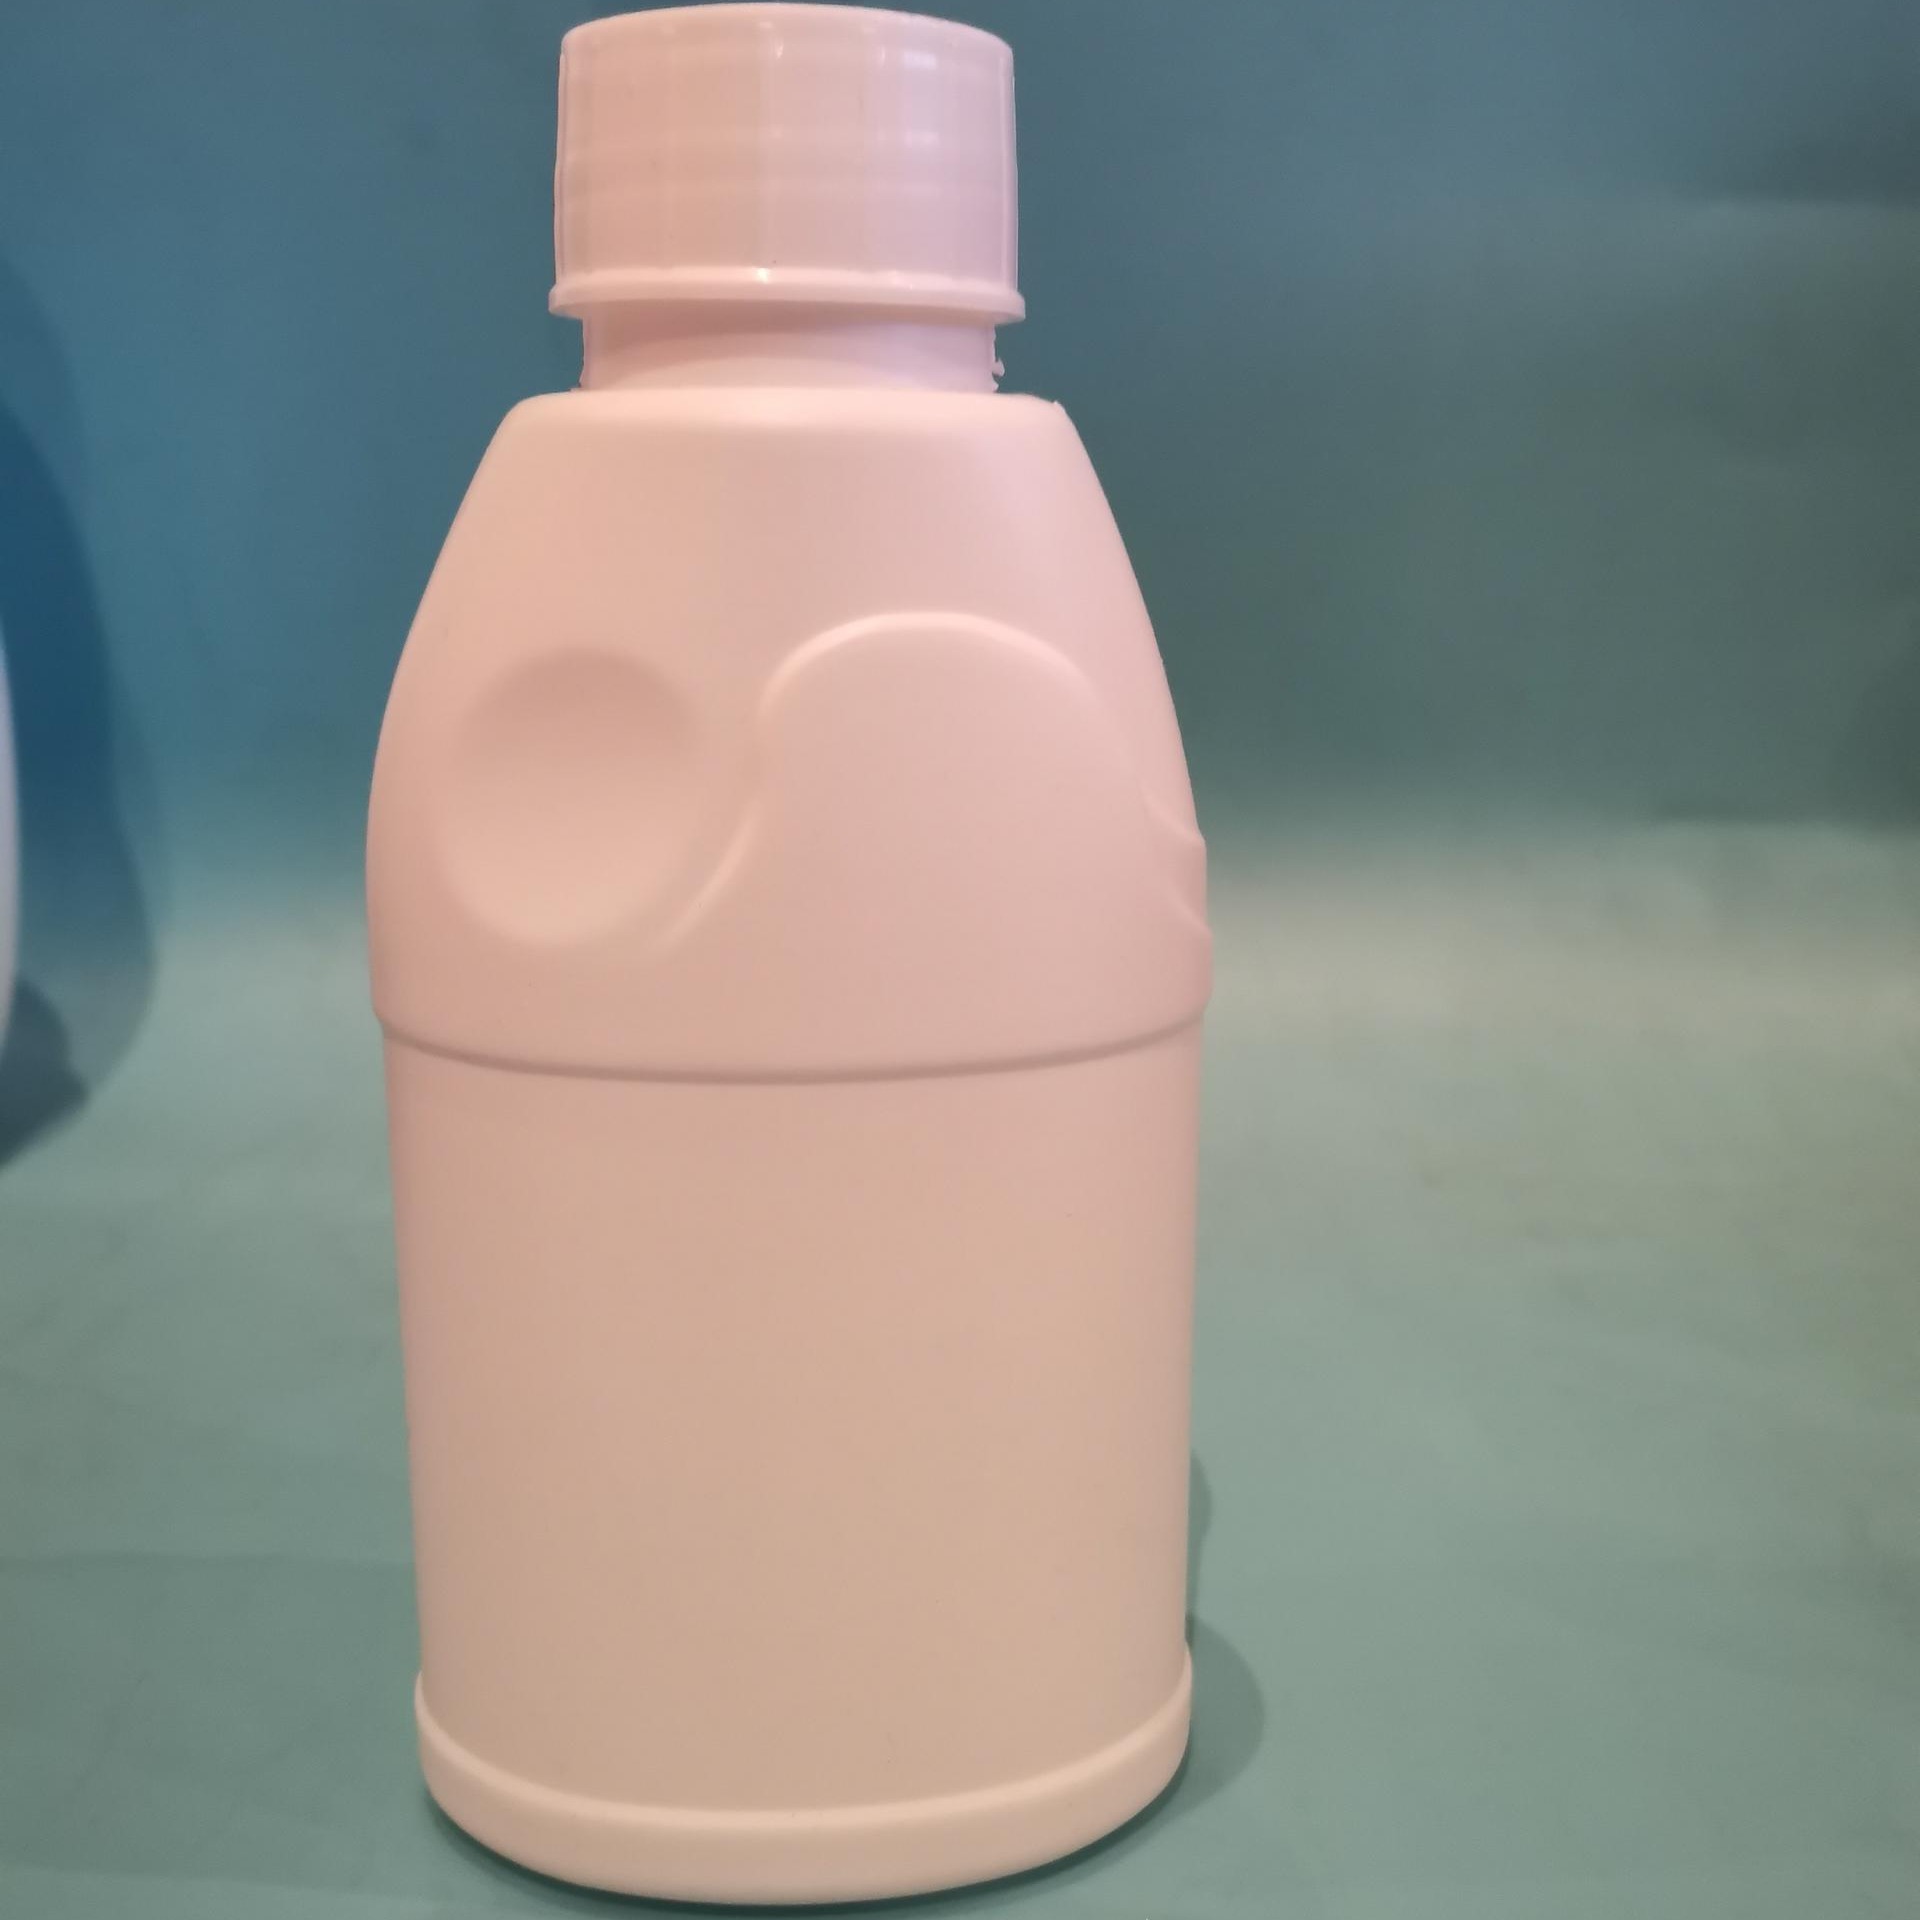 百盛消毒液瓶 塑料瓶、壶 厂家供应300ml消毒液瓶